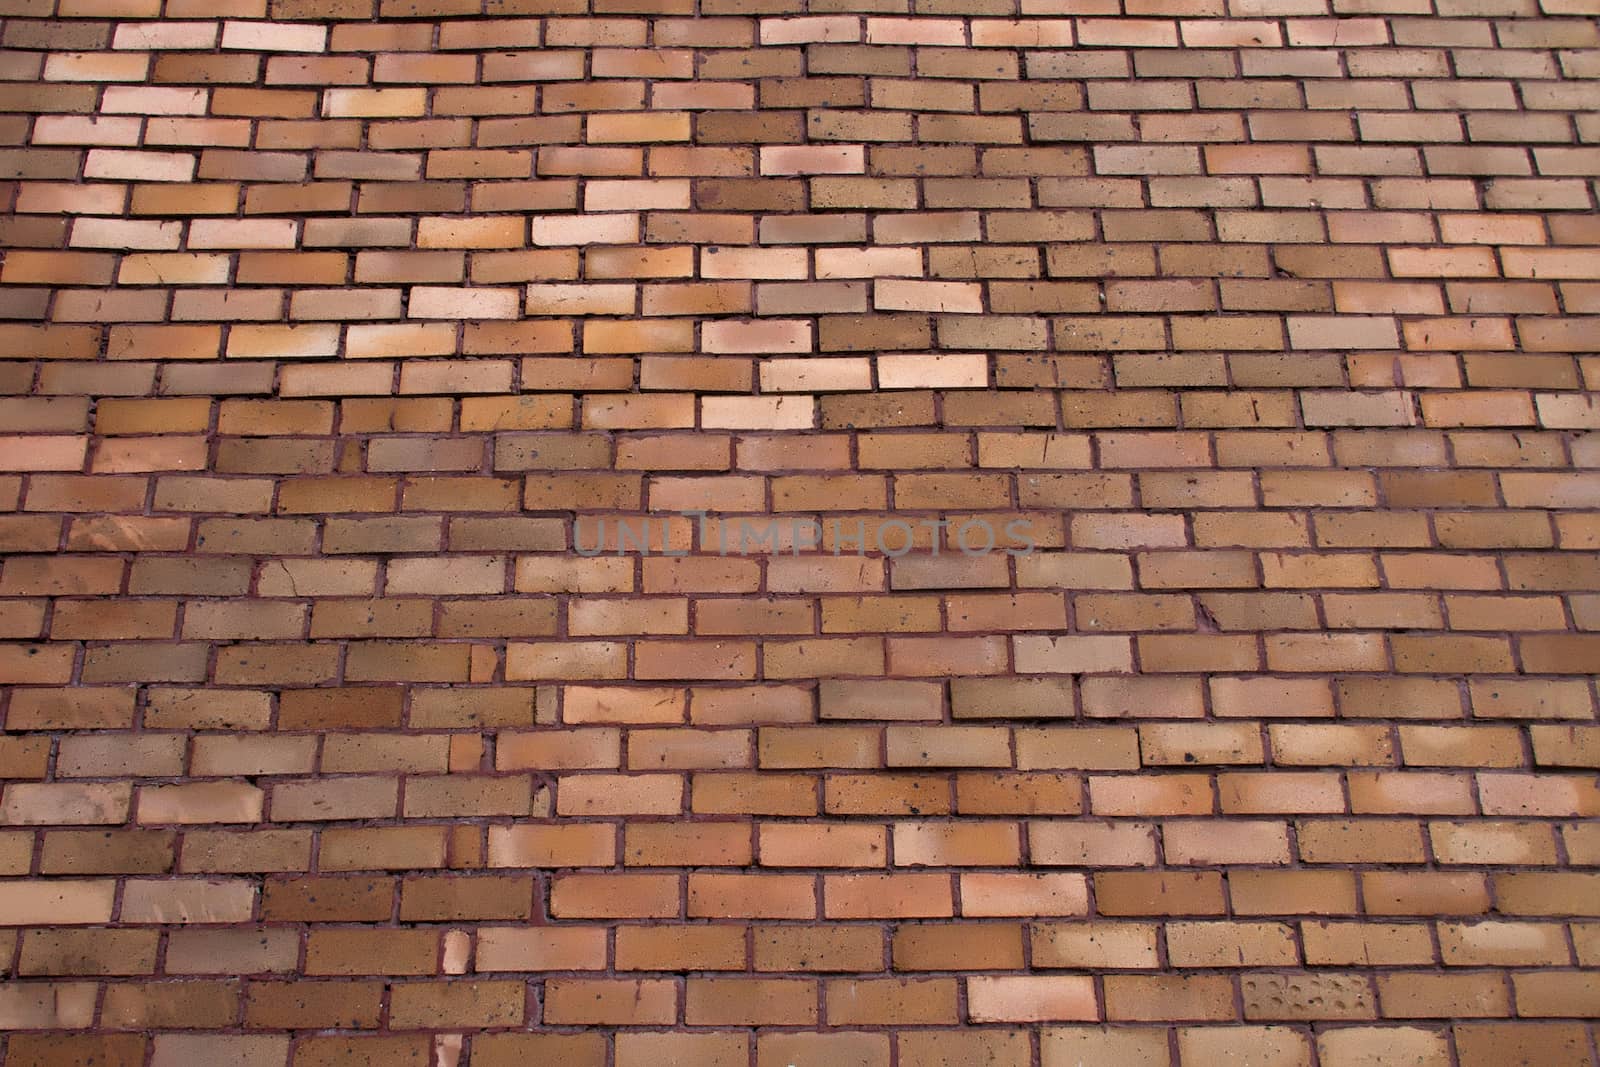 Brick Wall by nopparats